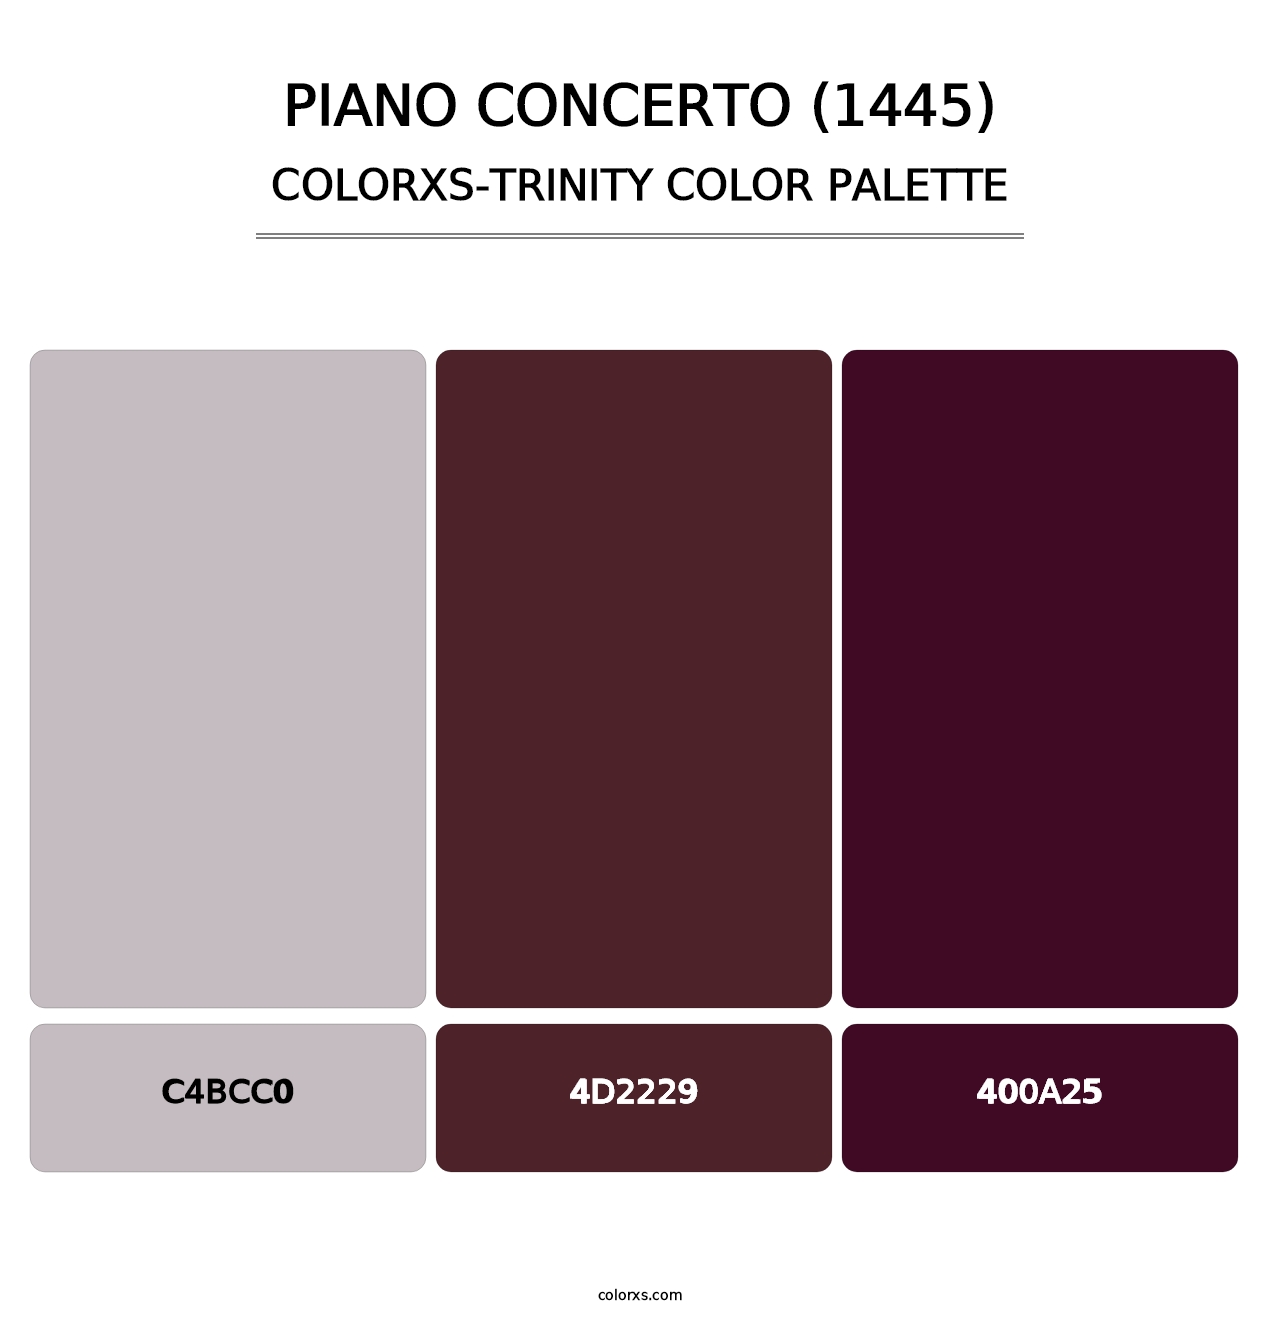 Piano Concerto (1445) - Colorxs Trinity Palette